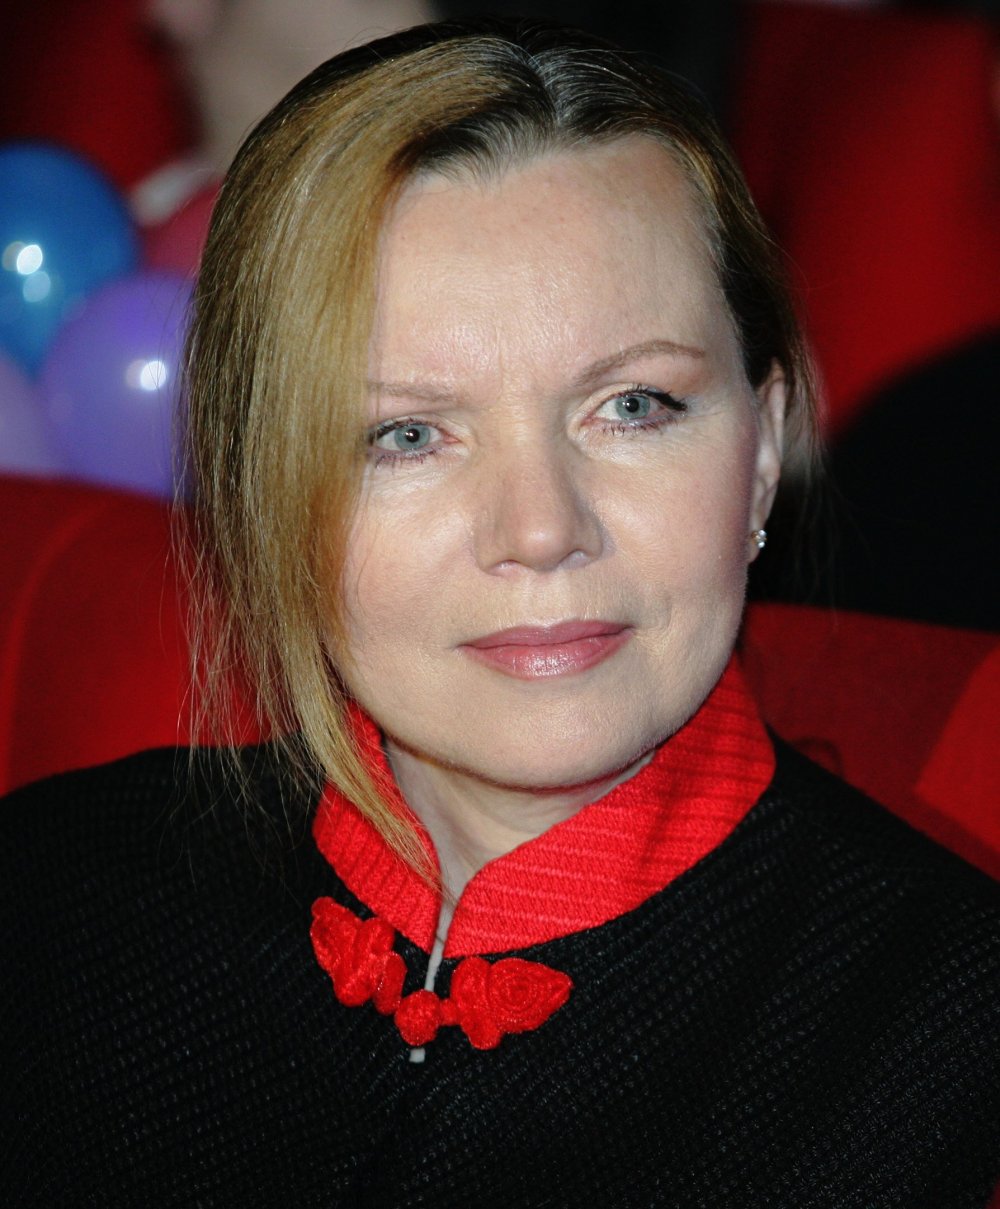 Валентина Теличкина